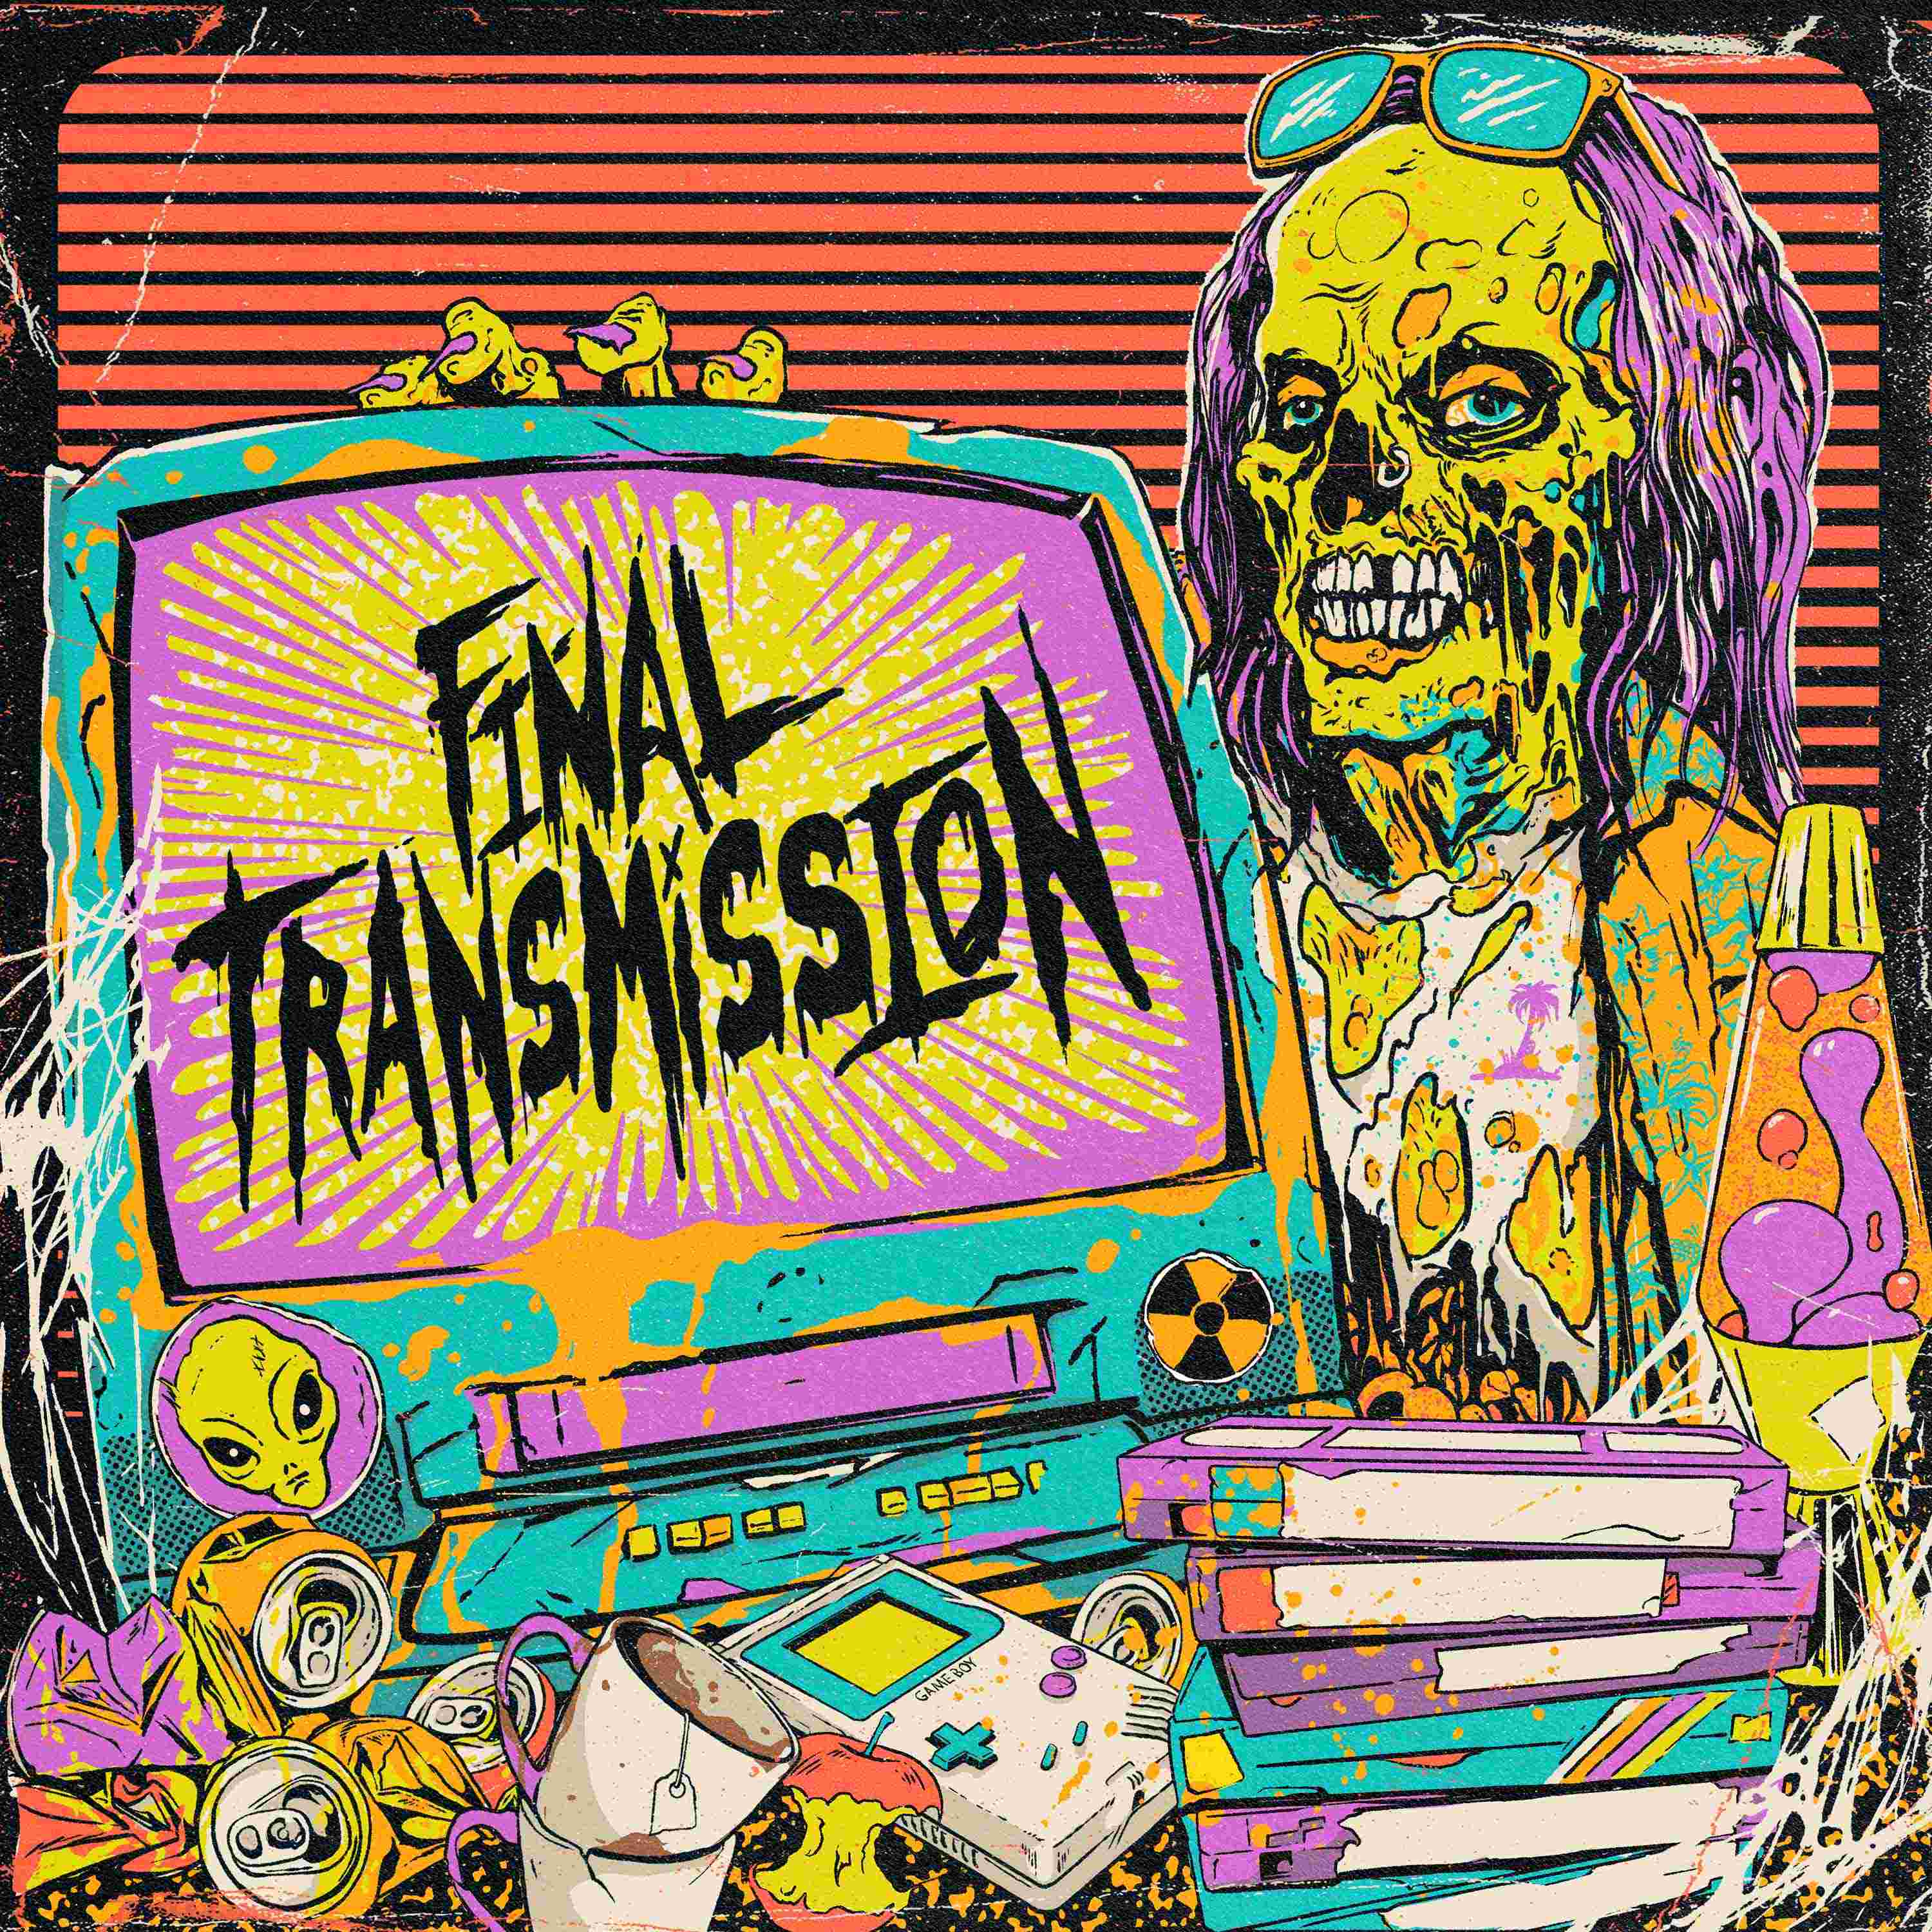 Final Transmission